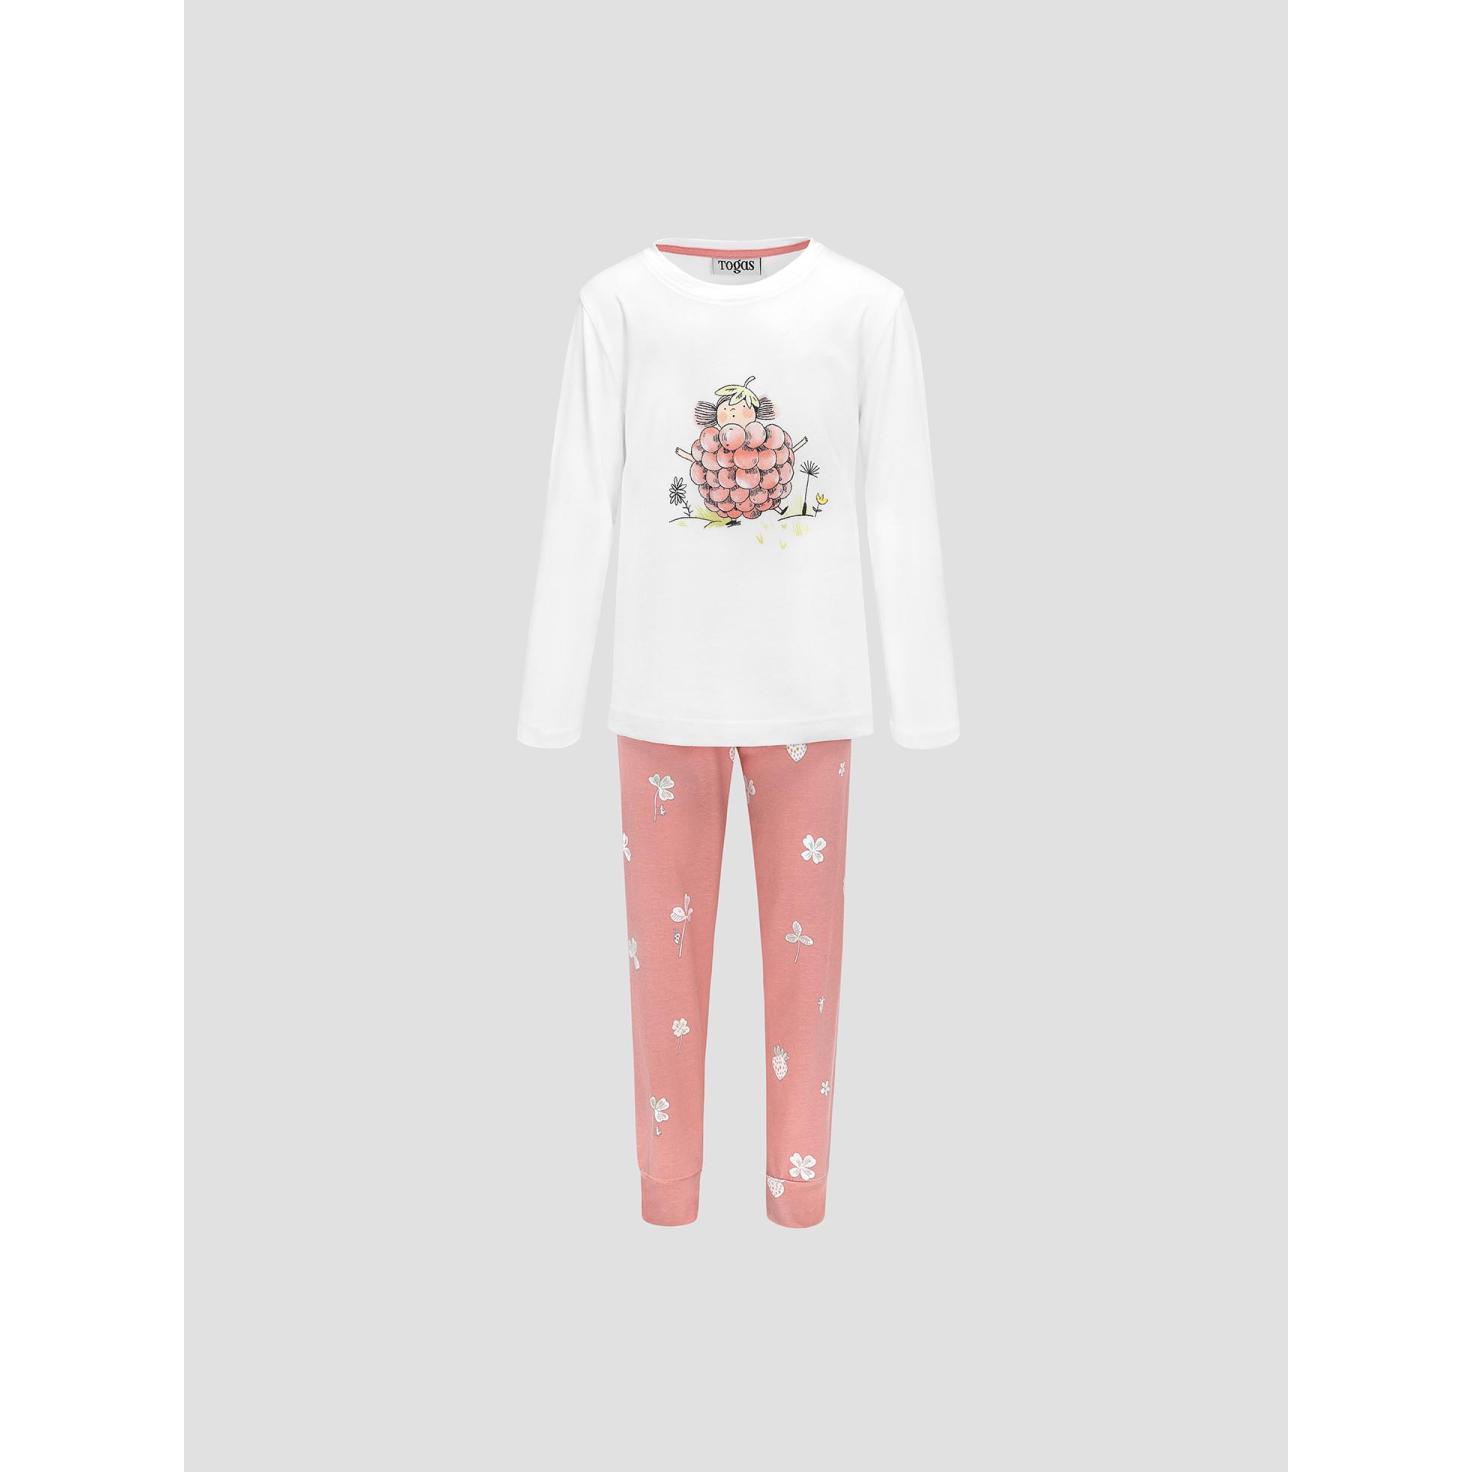 Пижама для девочек Kids by togas Стробби бело-розовый 116-122 см